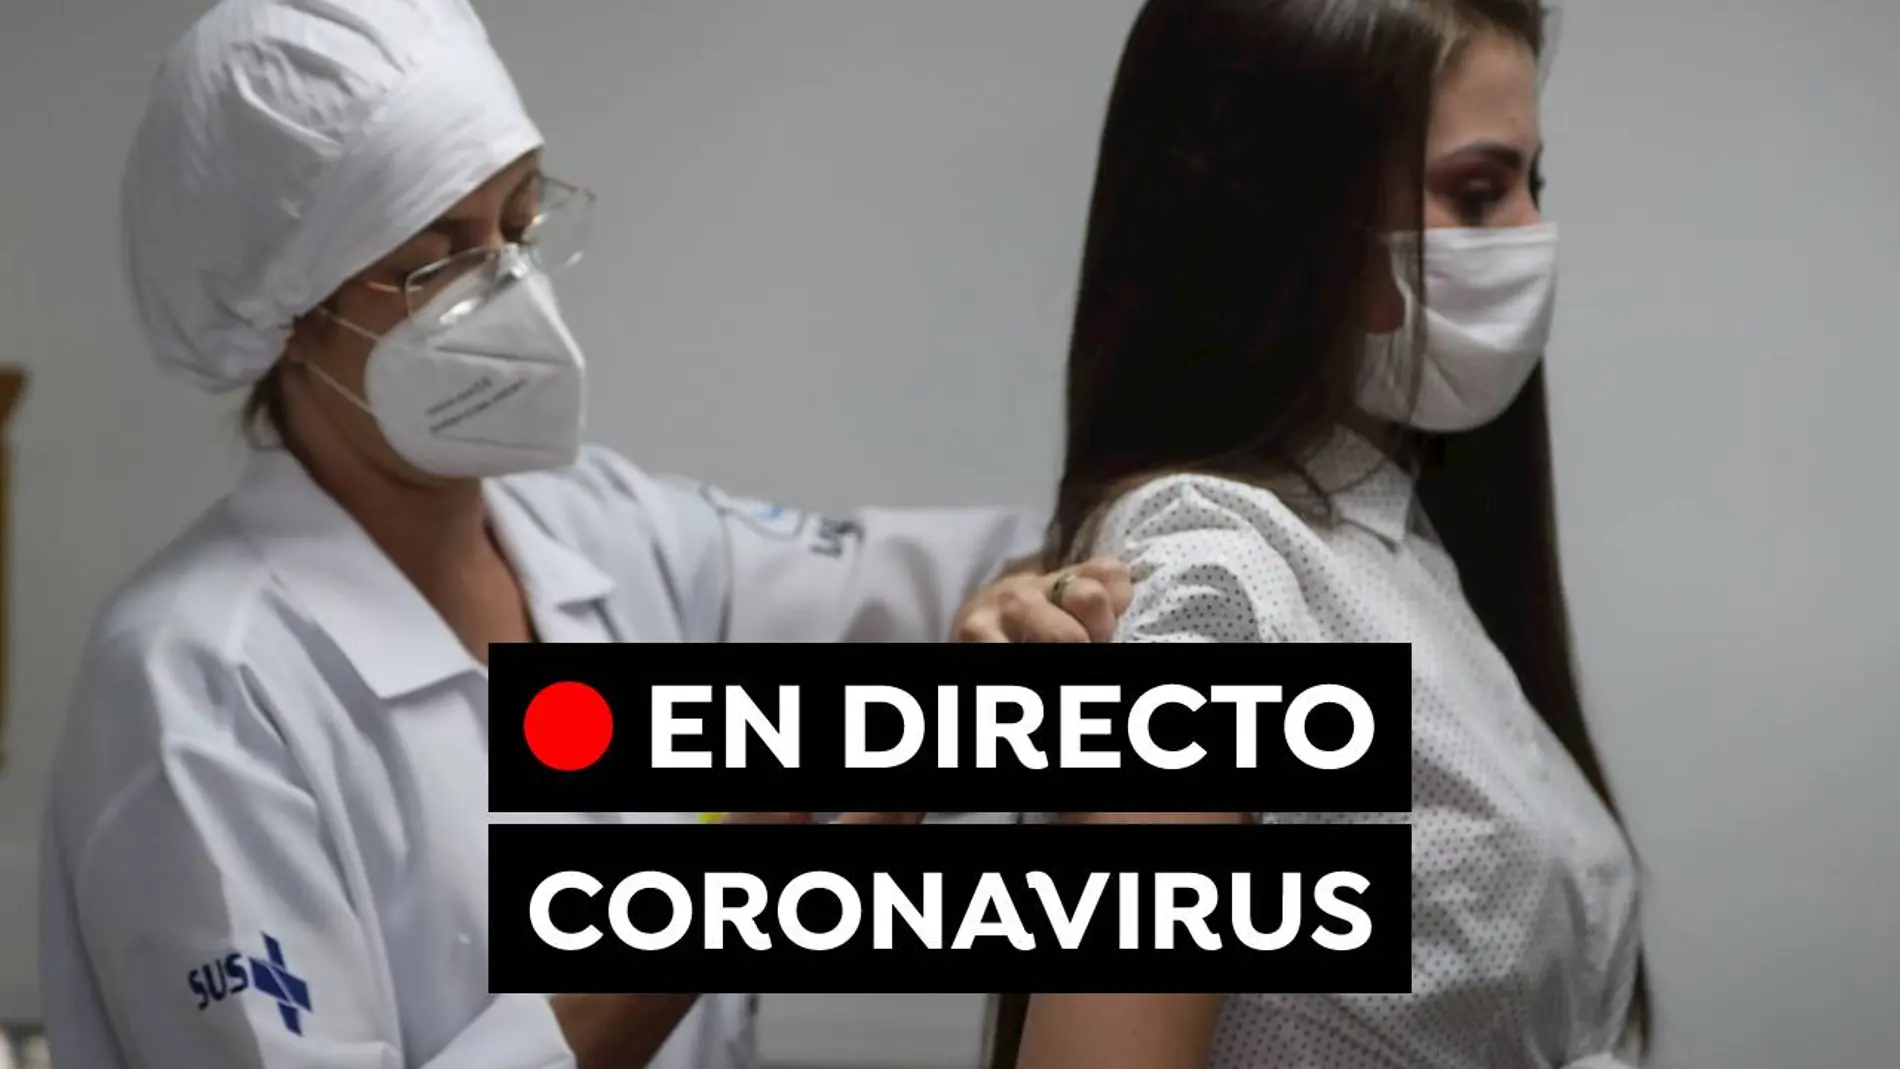 Coronavirus hoy: Última hora del pasaporte Covid, la nueva variante y casos de hoy de COVID-19, en directo